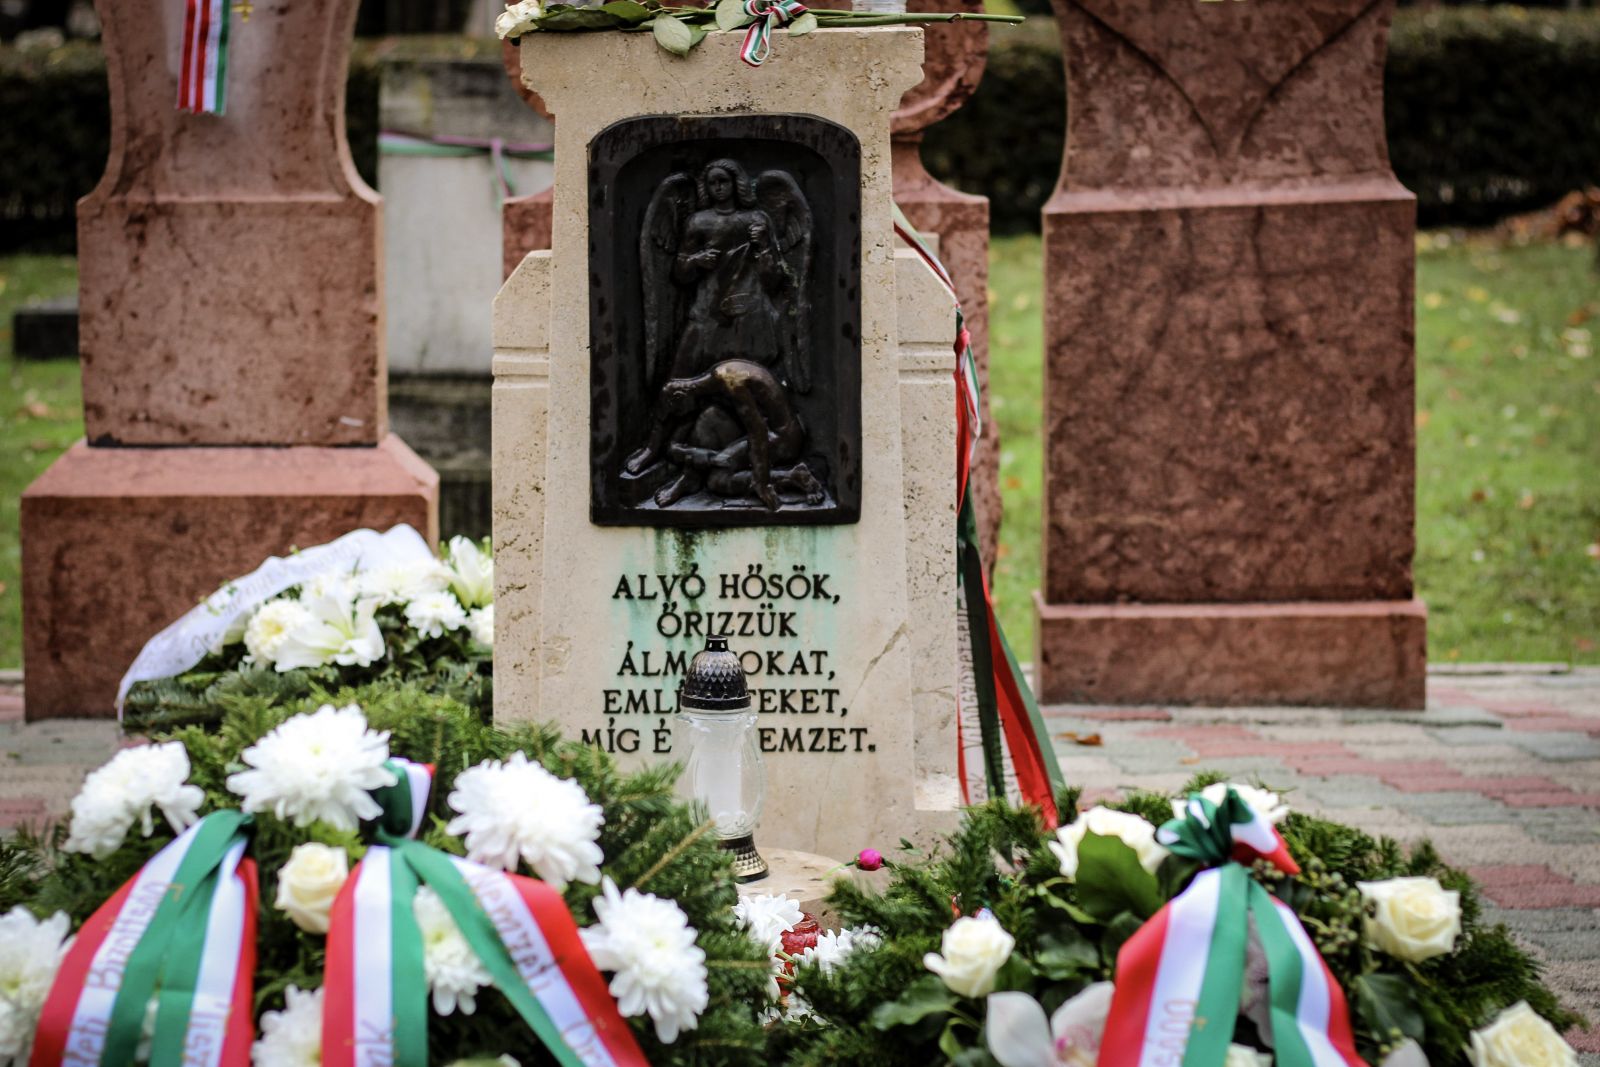 Csendes megemlékezést tartottak a Fiumei úti sírkertben az 1956-os forradalom és szabadságharc leverésének emlékére